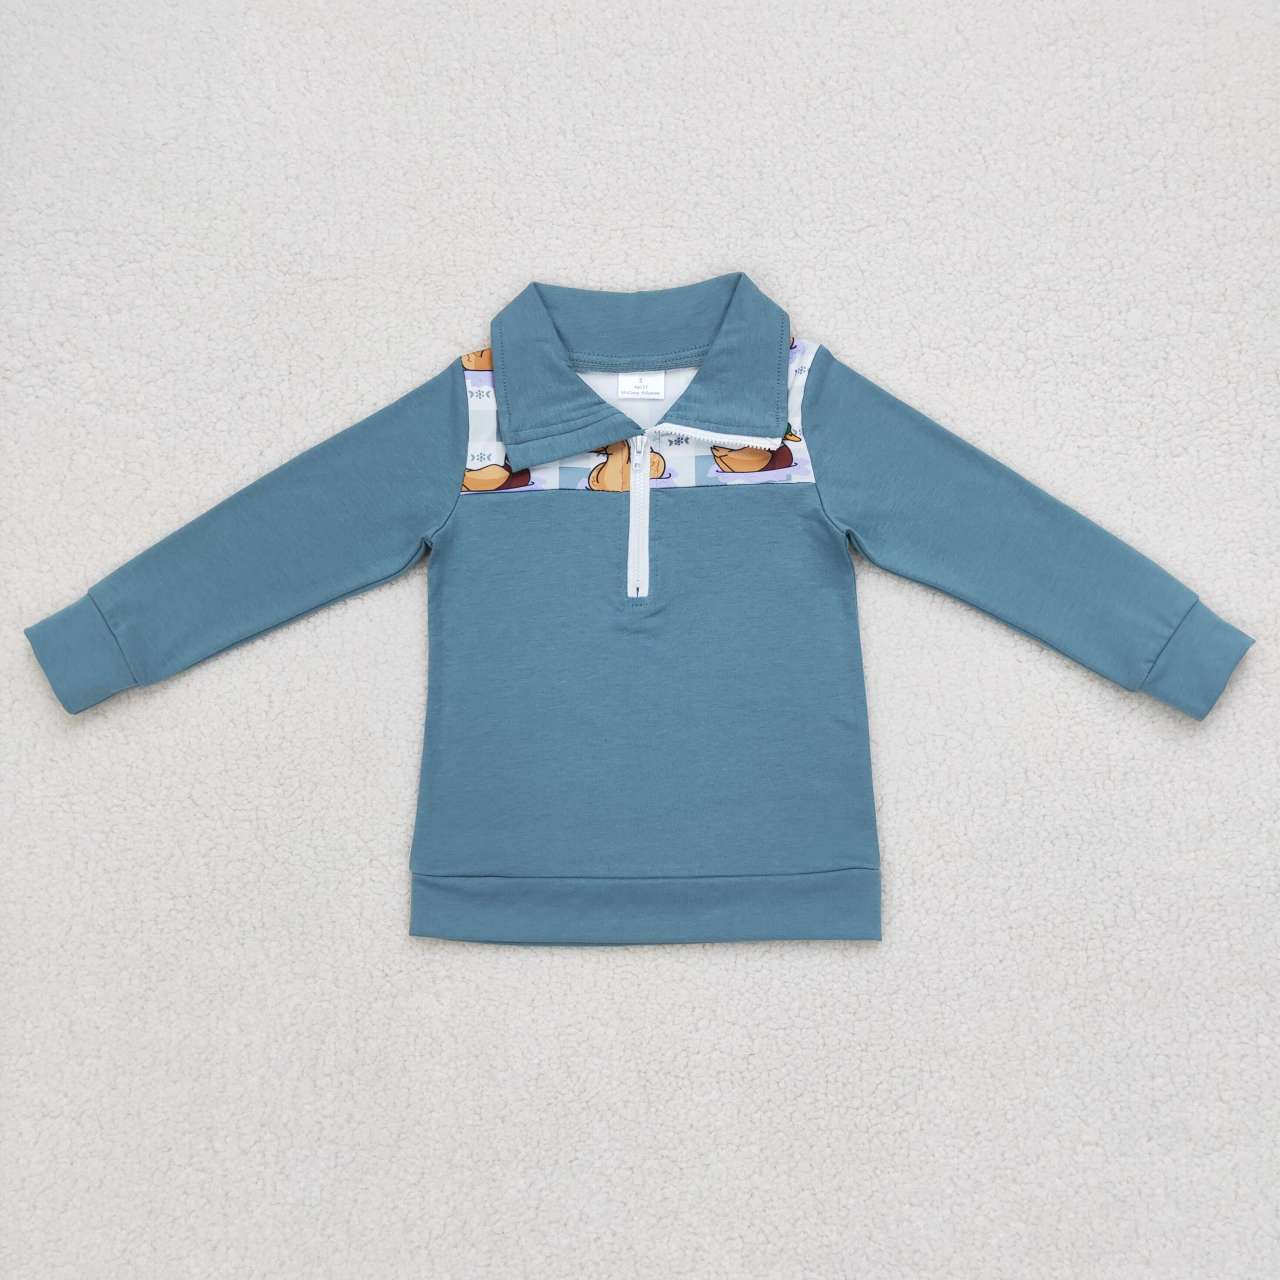 BT0329 toddler boy clothes mallard duck winter zipper top